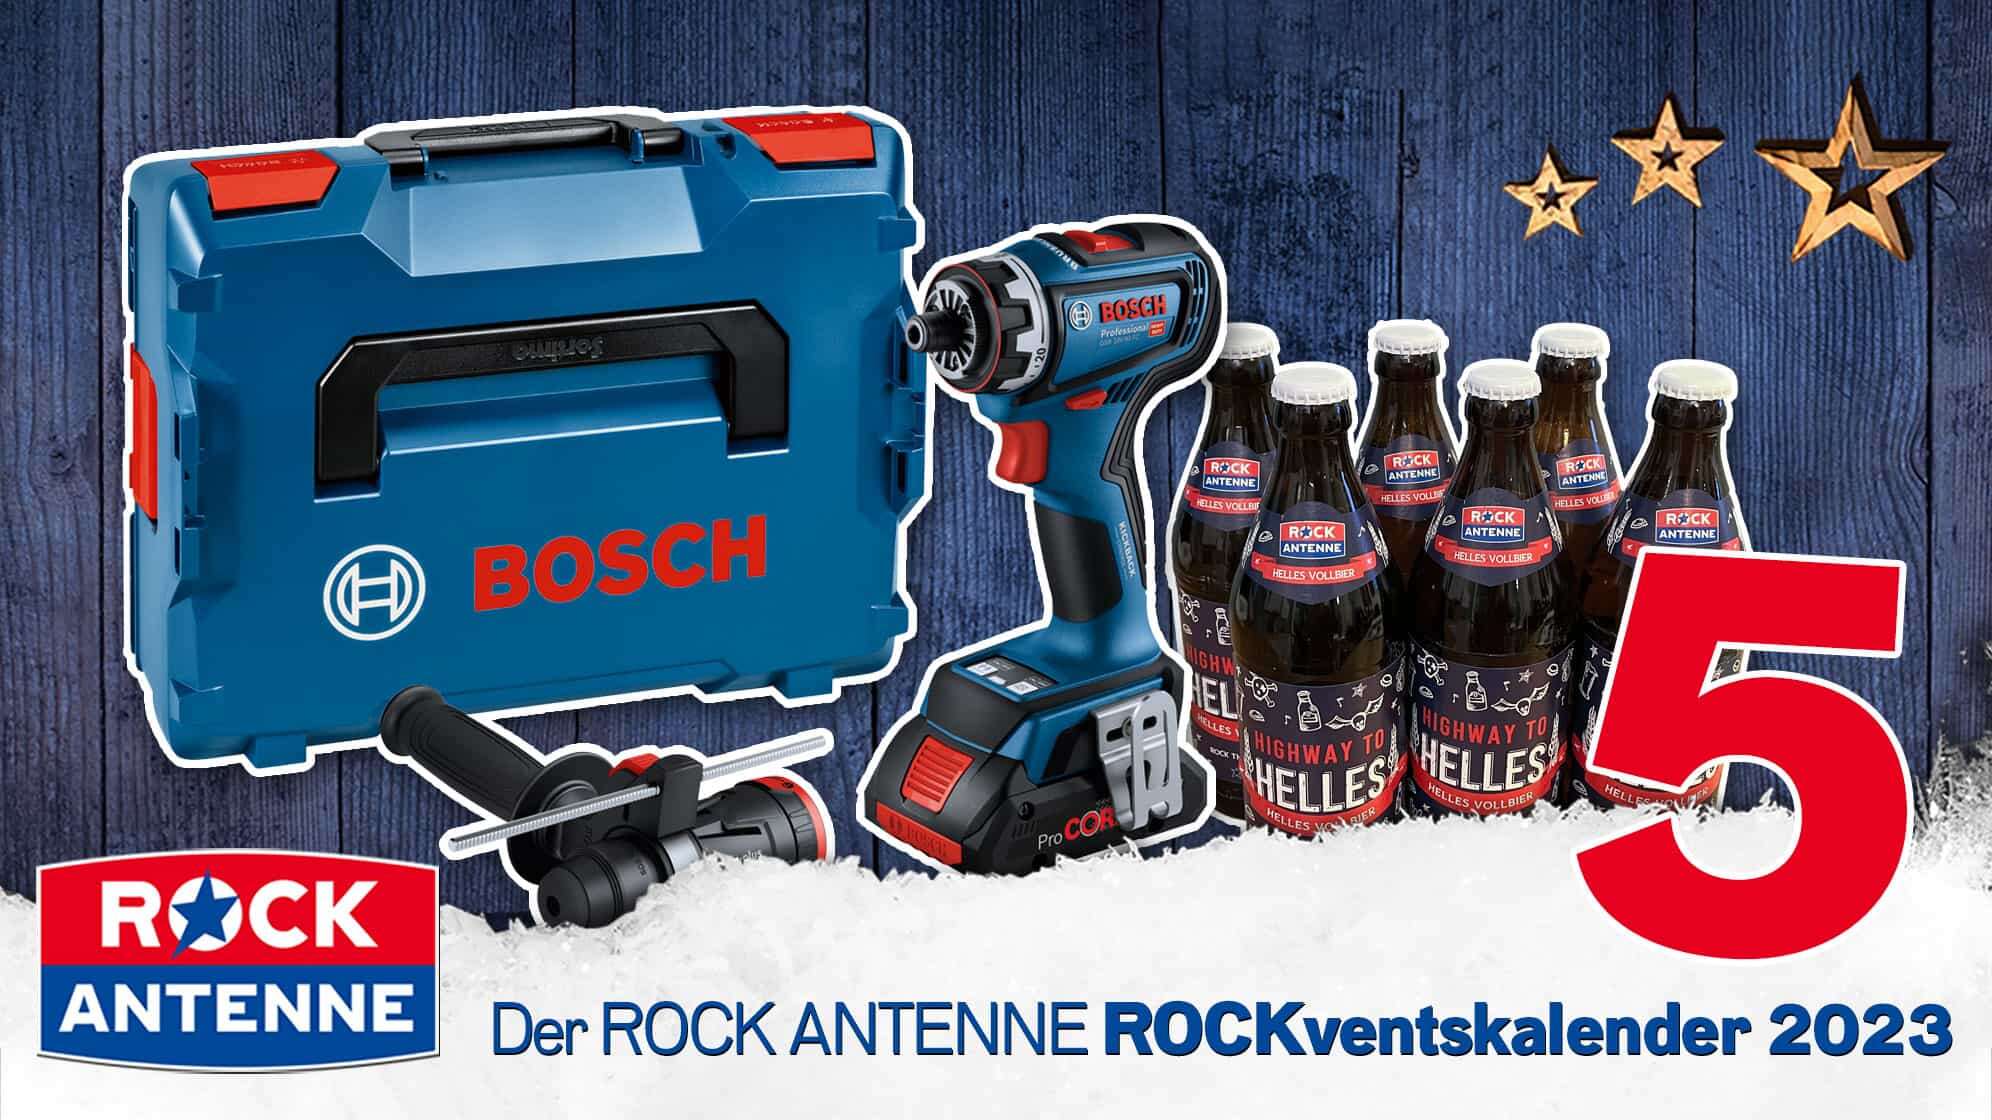 ROCK ANTENNE ROCKventskalender Türchen 5: BOSCH Professional Bohrschrauber Werkzeug Set mit ROCK ANTENNE Bier